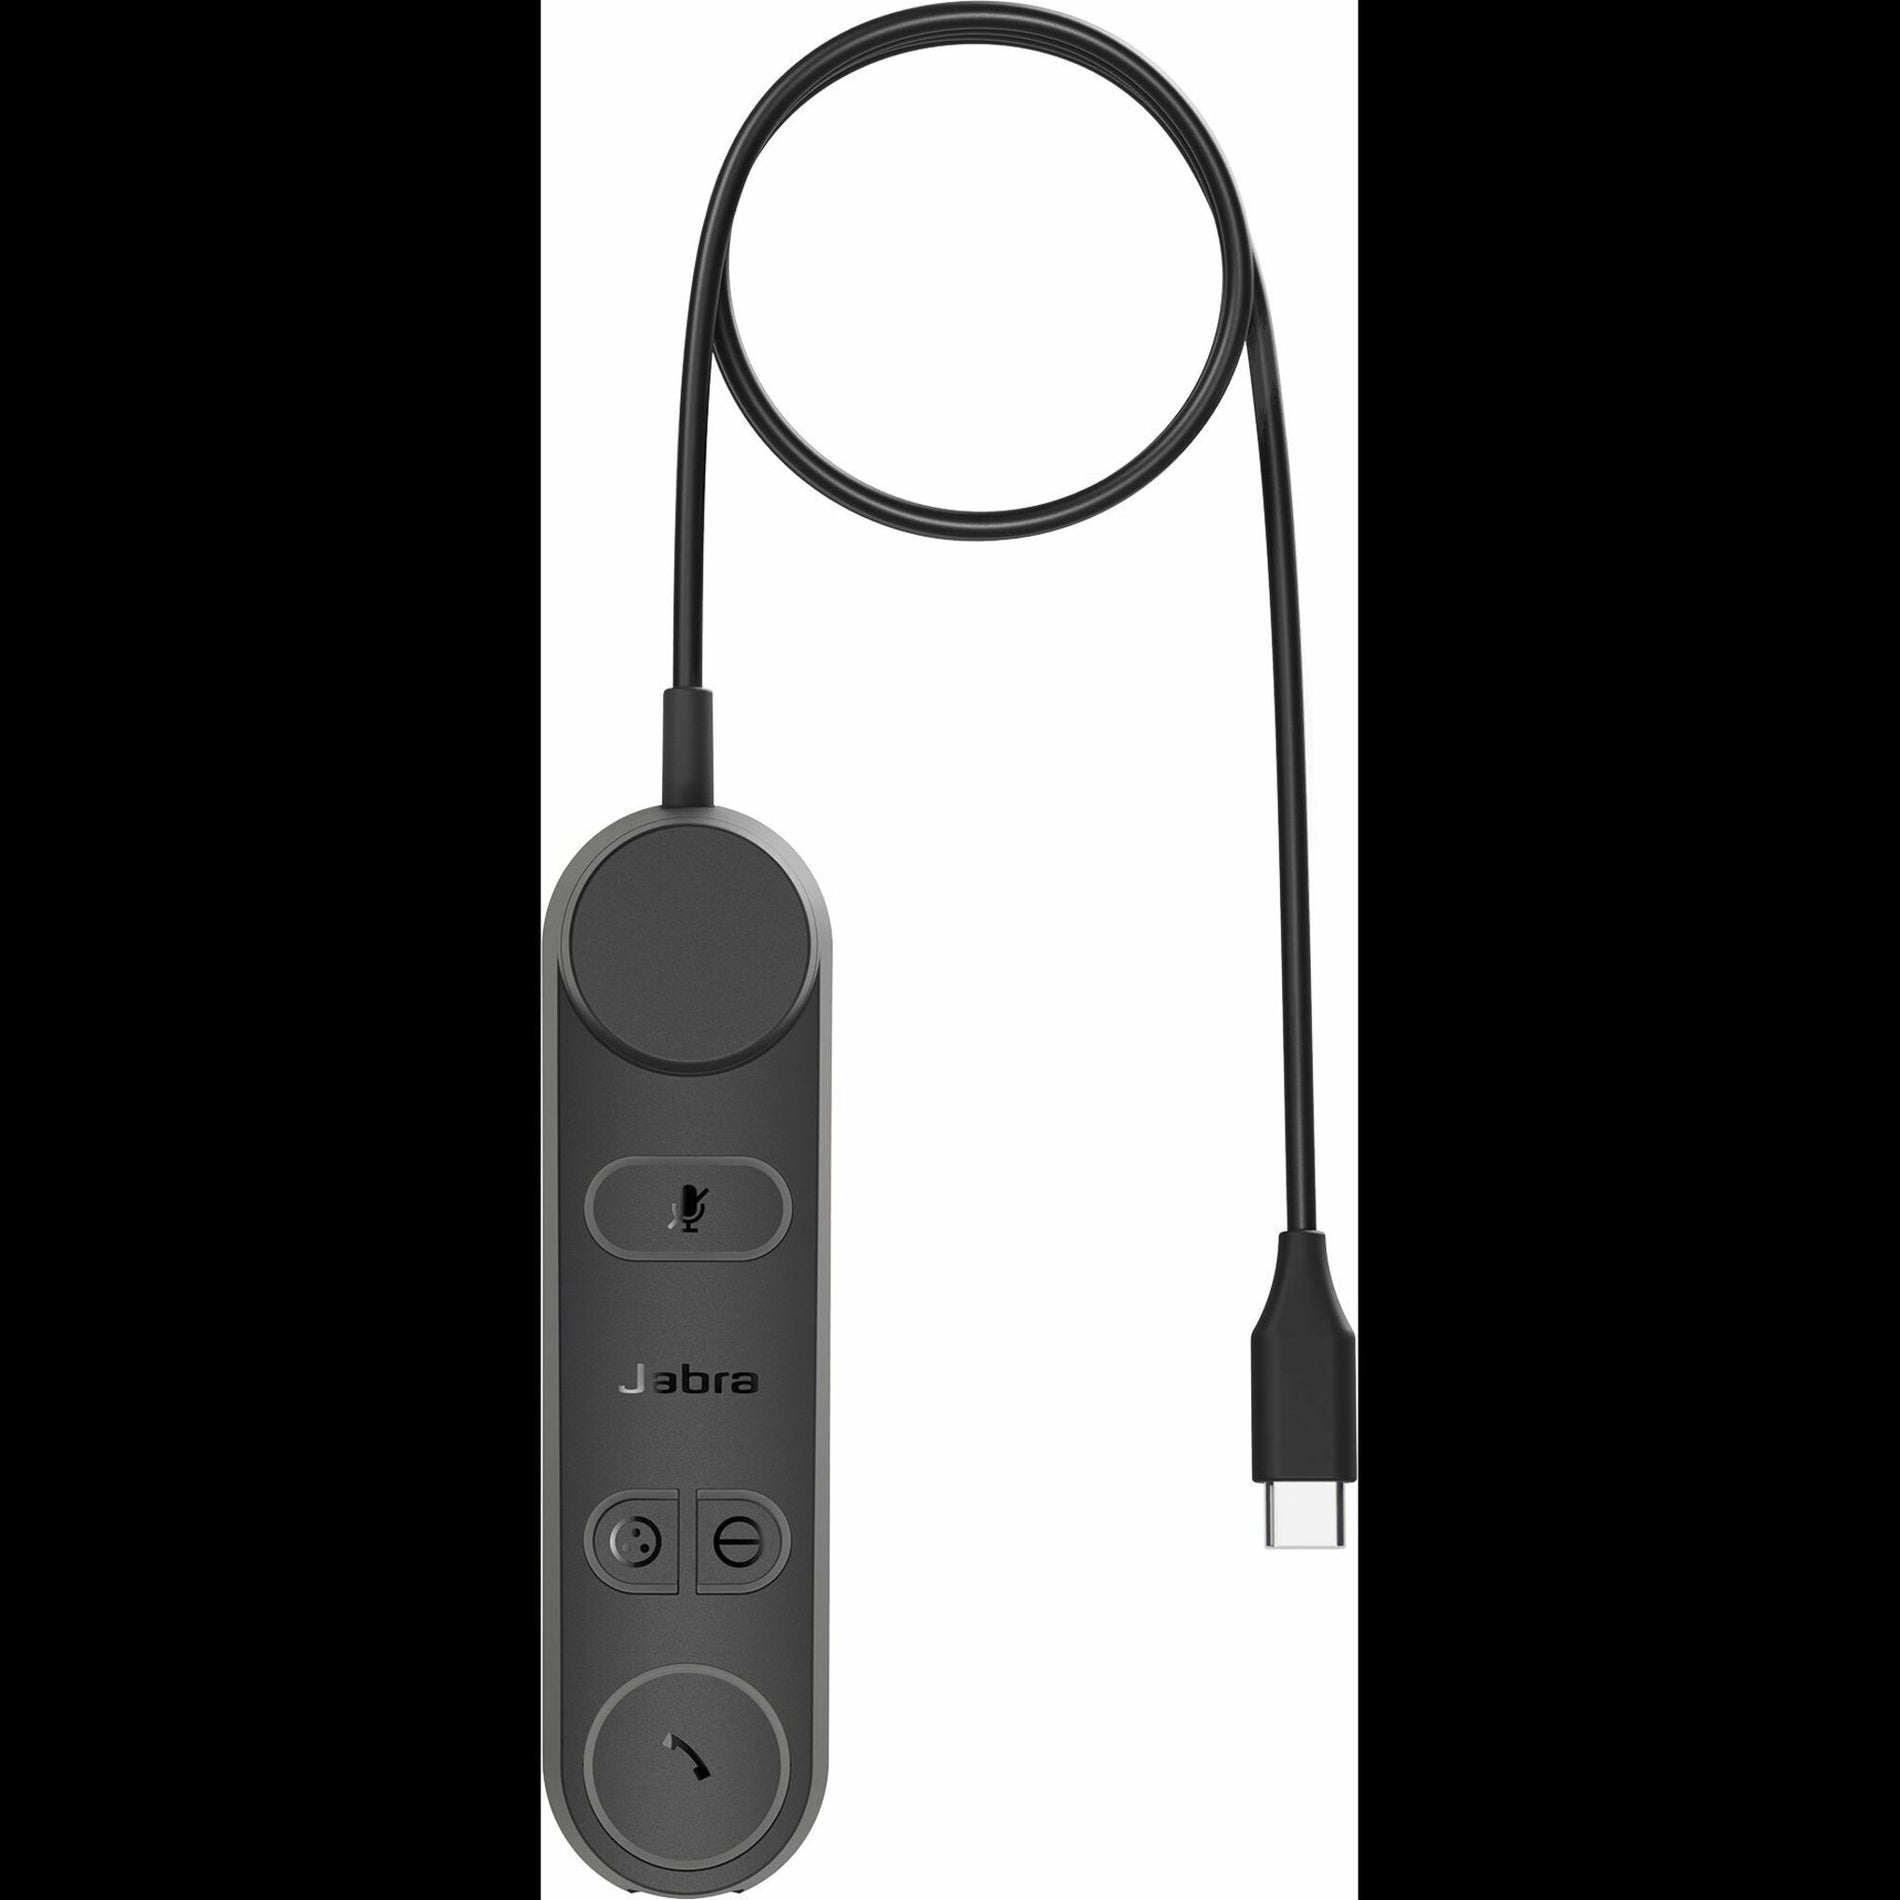 자브라 50-2219: Jabra 50-2219 엔게이지 50 II: Engage 50 II 링크: Link USB-A: USB-A UC: UC 헤드셋: headset 어댑터: adapter 향상: Enhance 귀하의: Your 헤드셋: headset 경험: Experience